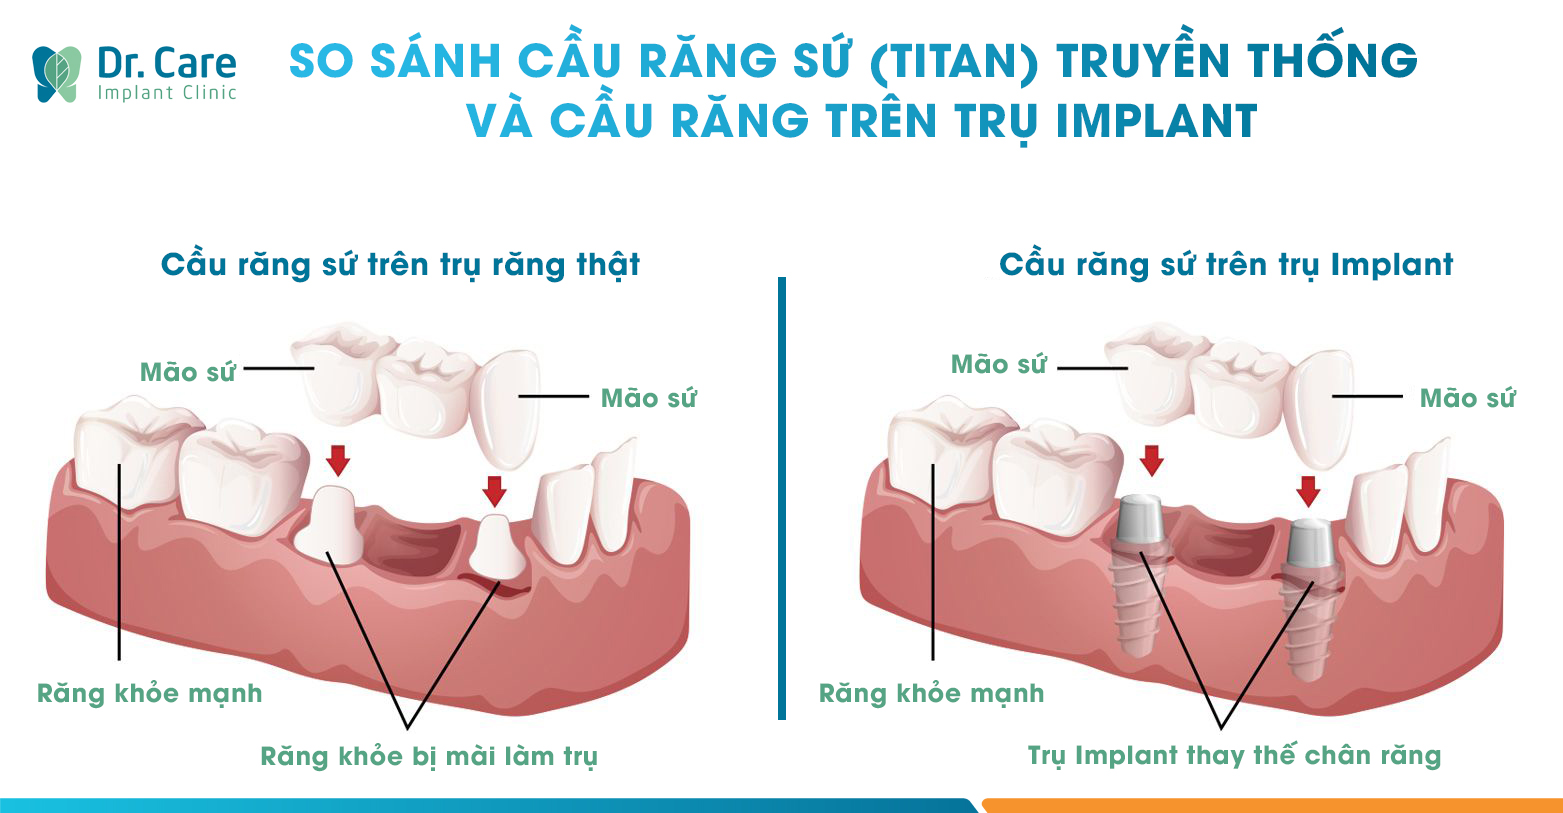 Cầu răng sứ trên trụ Implant